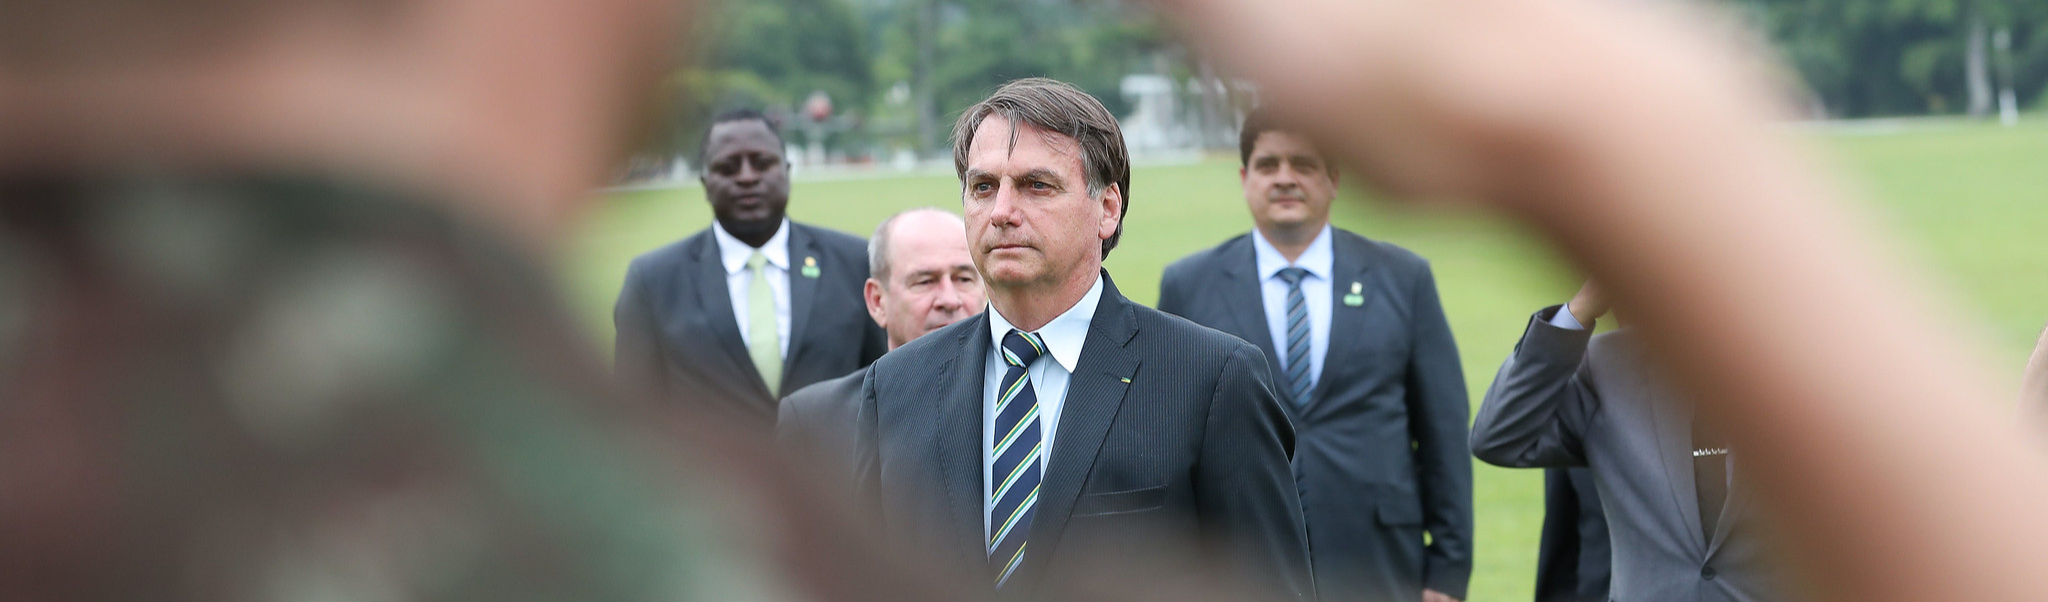 José Luís Fiori | Qual a proposta dos militares brasileiros ao confiar sua fidelidade aos EUA?